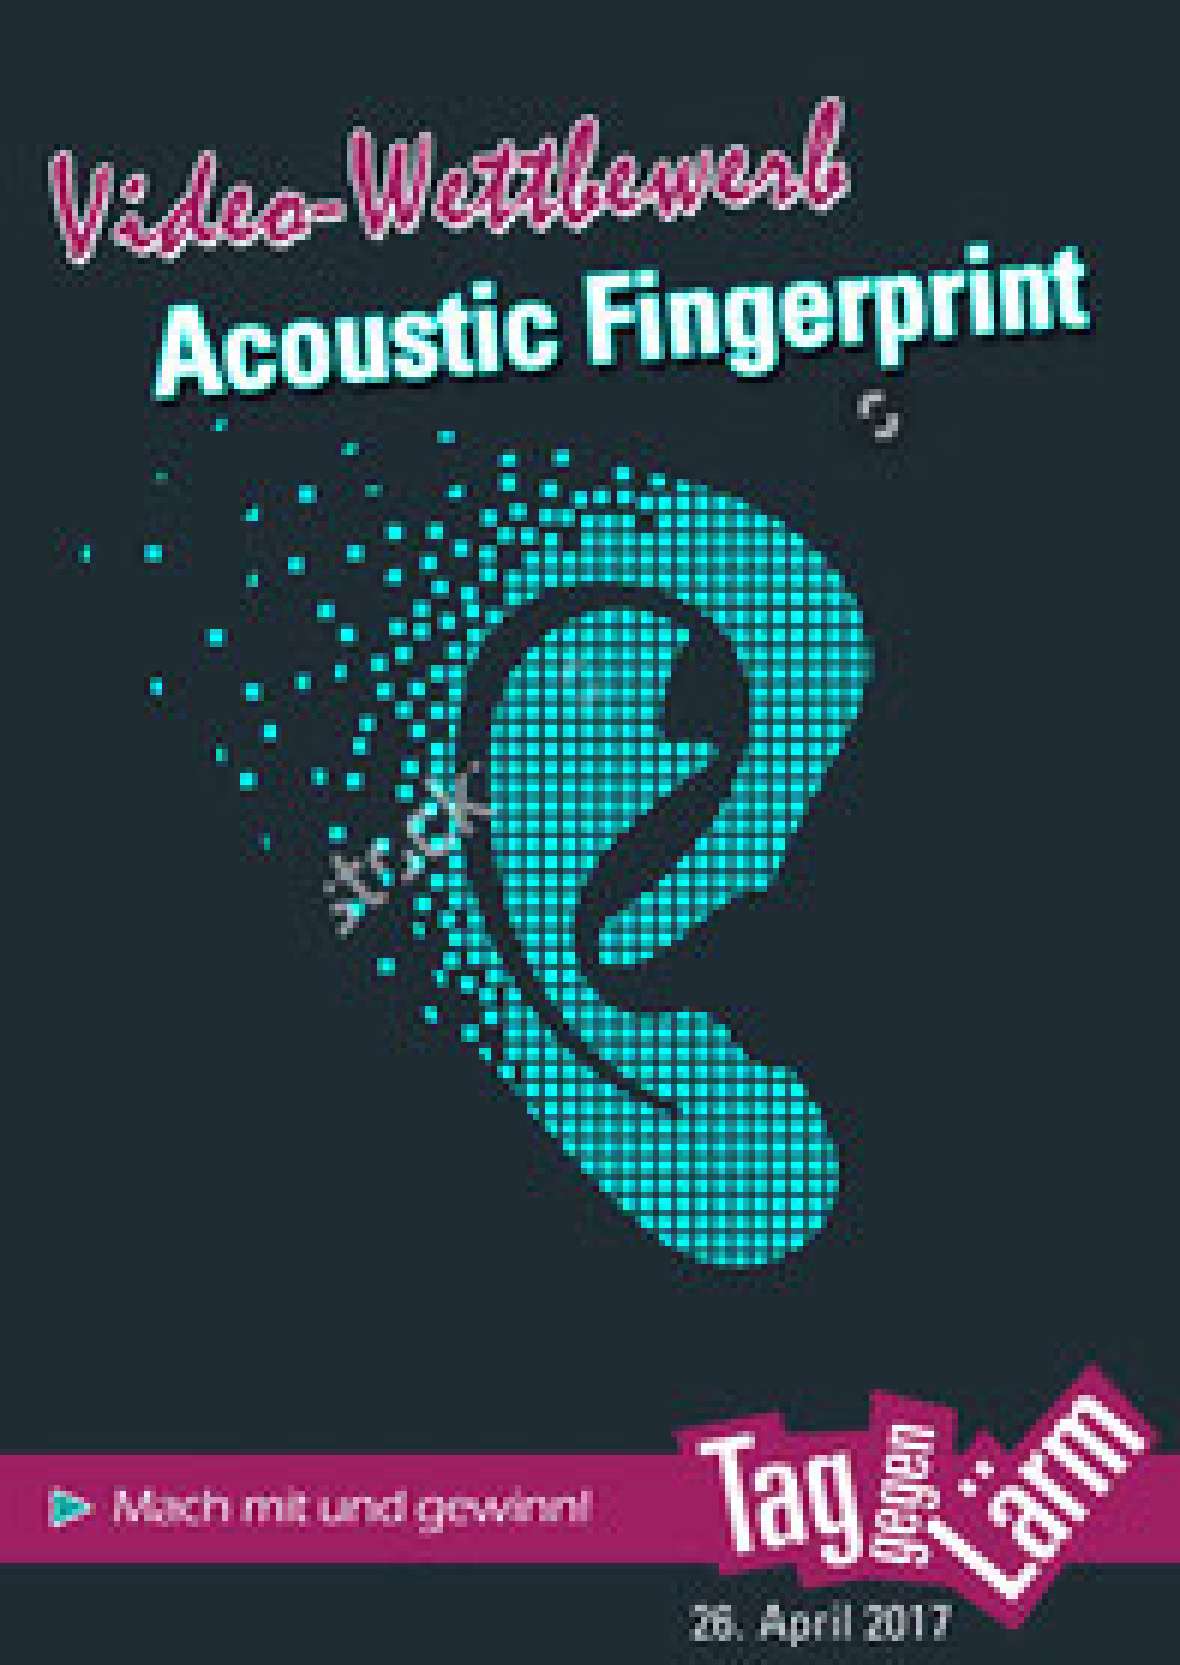 Logo des Videowettbewerbs, einem schematischen Ohr mit der Überschrift "Acoustic Fingerprint" 